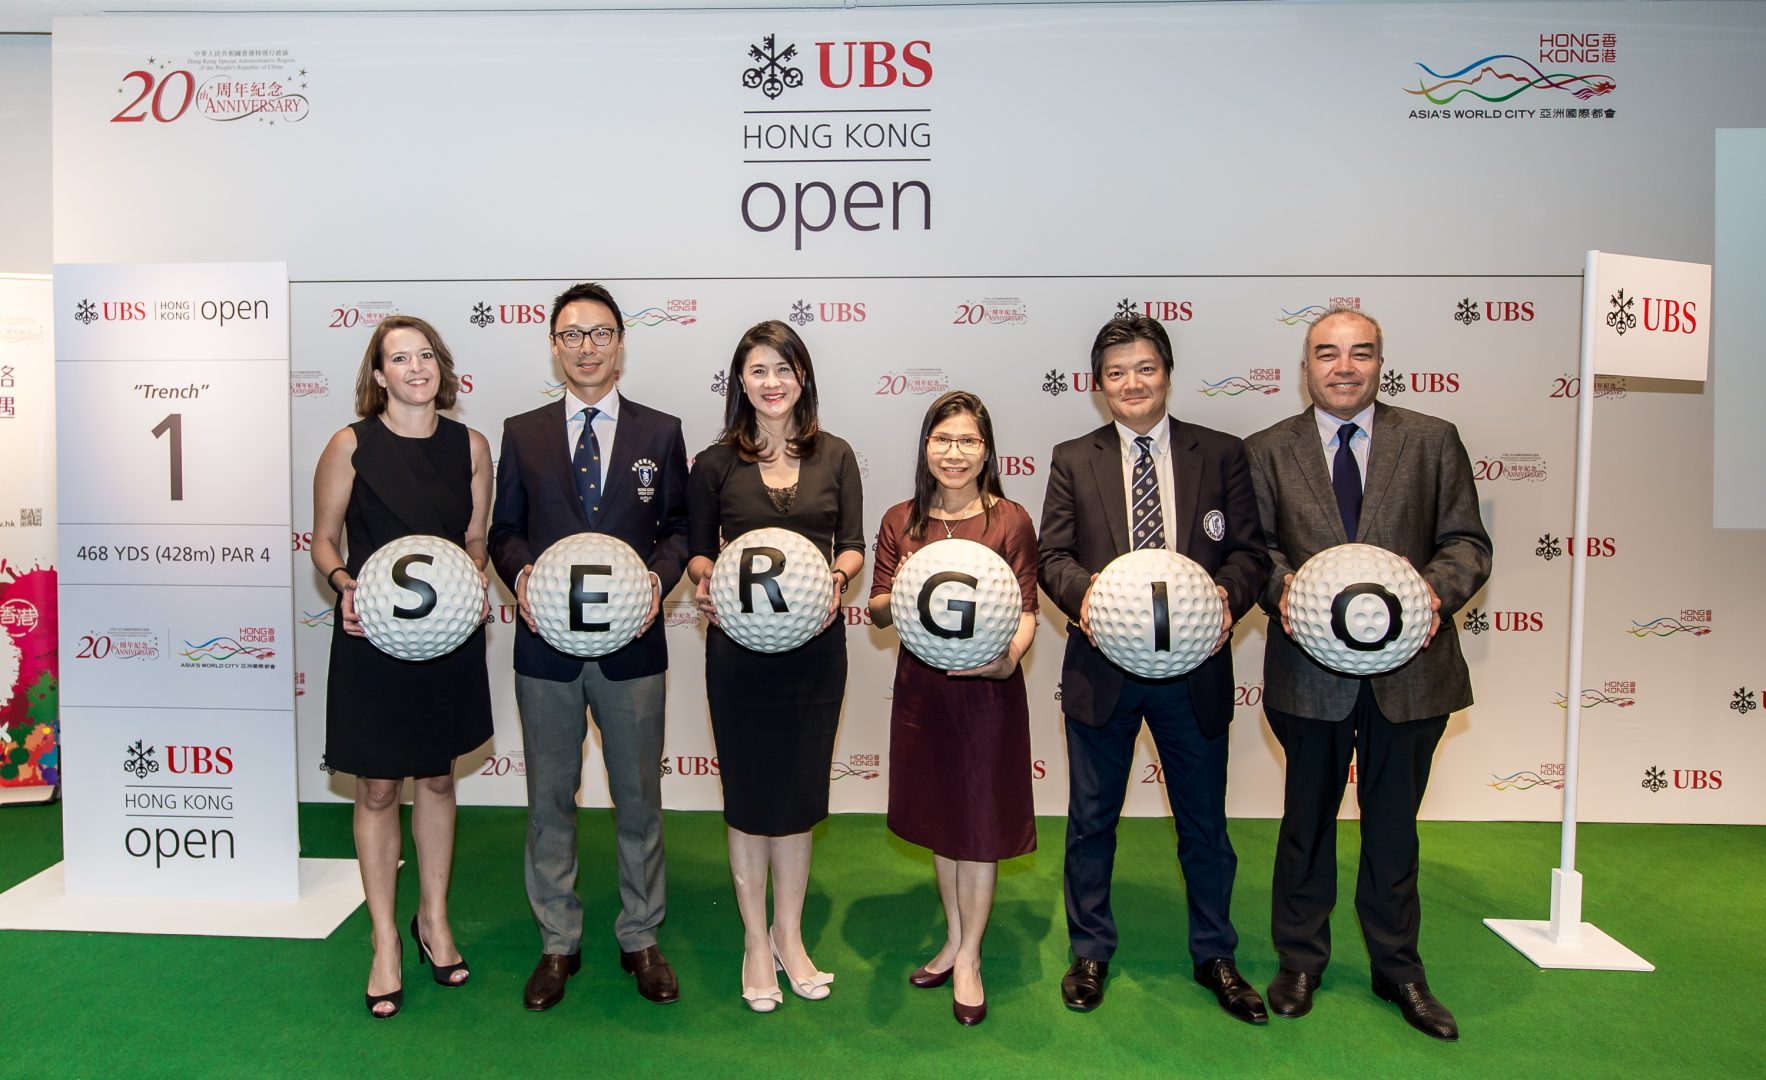 GARCIA DEBUTS AT UBS HONG KONG OPEN